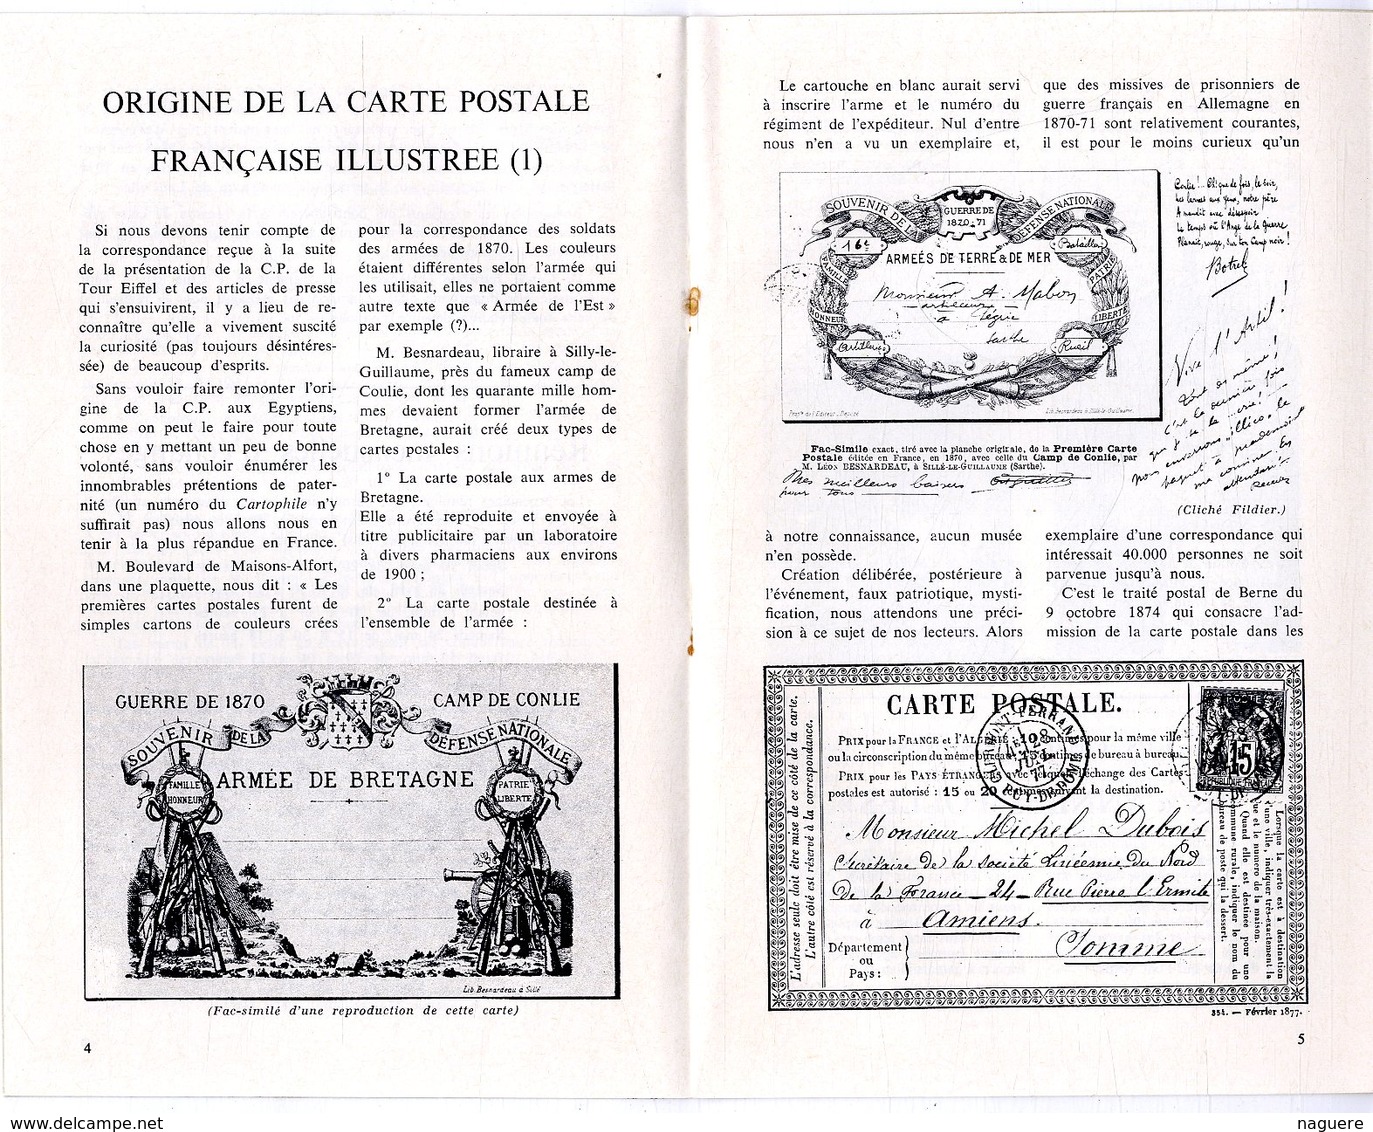 LE CARTOPHILE  MARS 1969  N° 12  -  16 PAGES   ORIGINE DE LA CARTE POSTALE ILLUSTREES  POUR LE PLAISIR Etc .. - Français